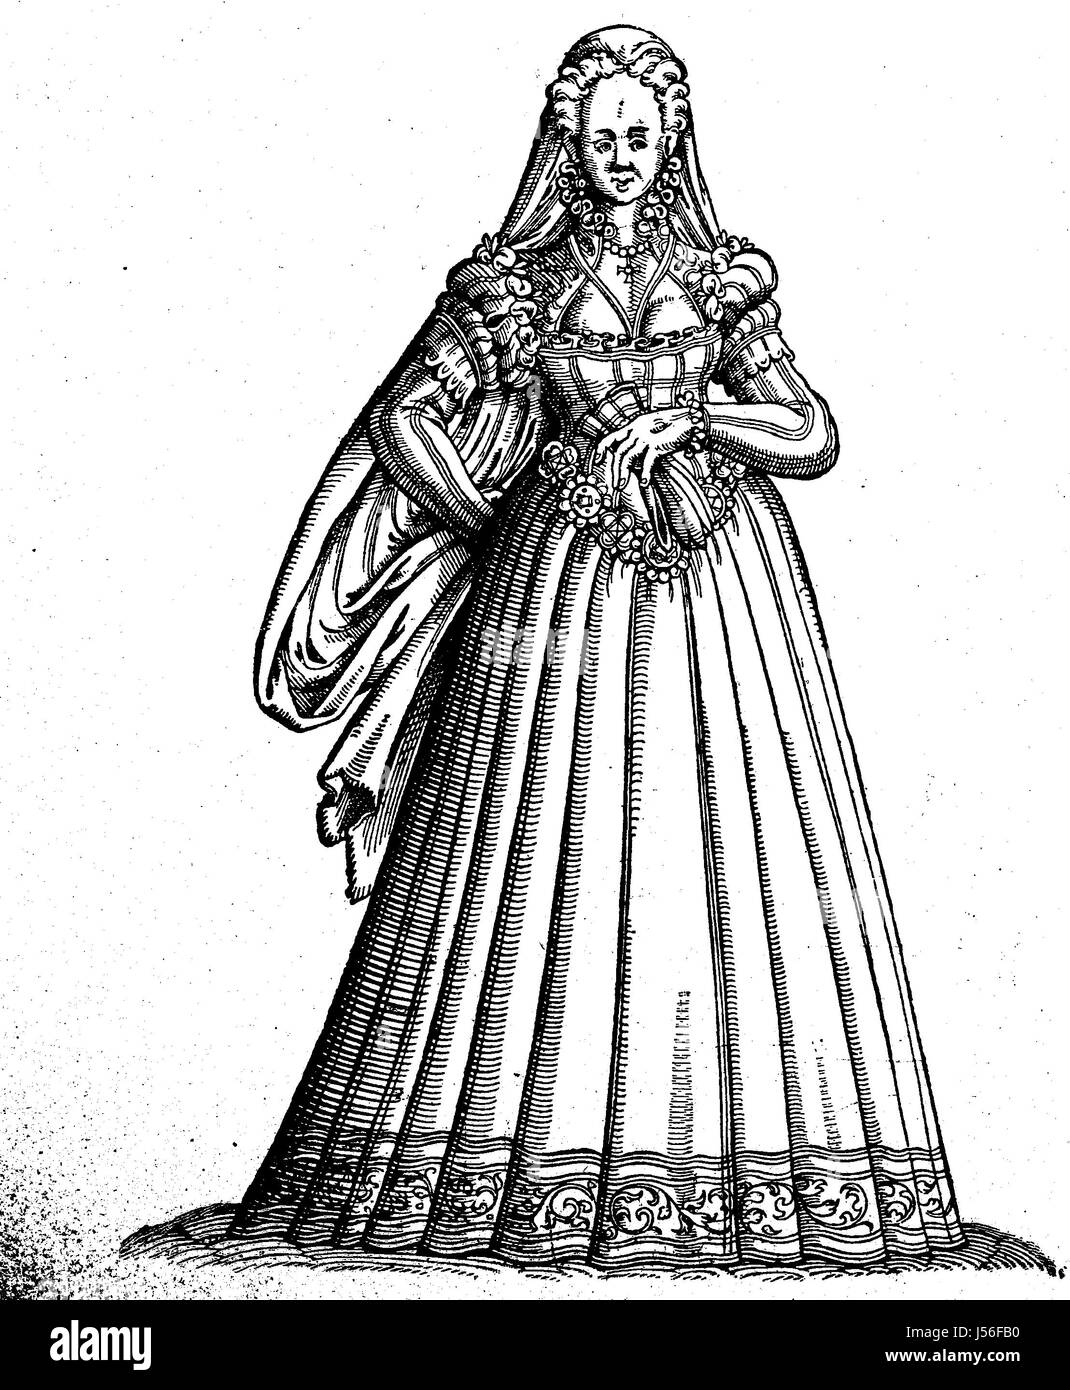 Kostüm der jungen Frauen in Rom, Kostüm-Bild aus dem 16. Jahrhundert, digital verbesserte Wiedergabe aus einer Publikation des Jahres 1880 Stockfoto